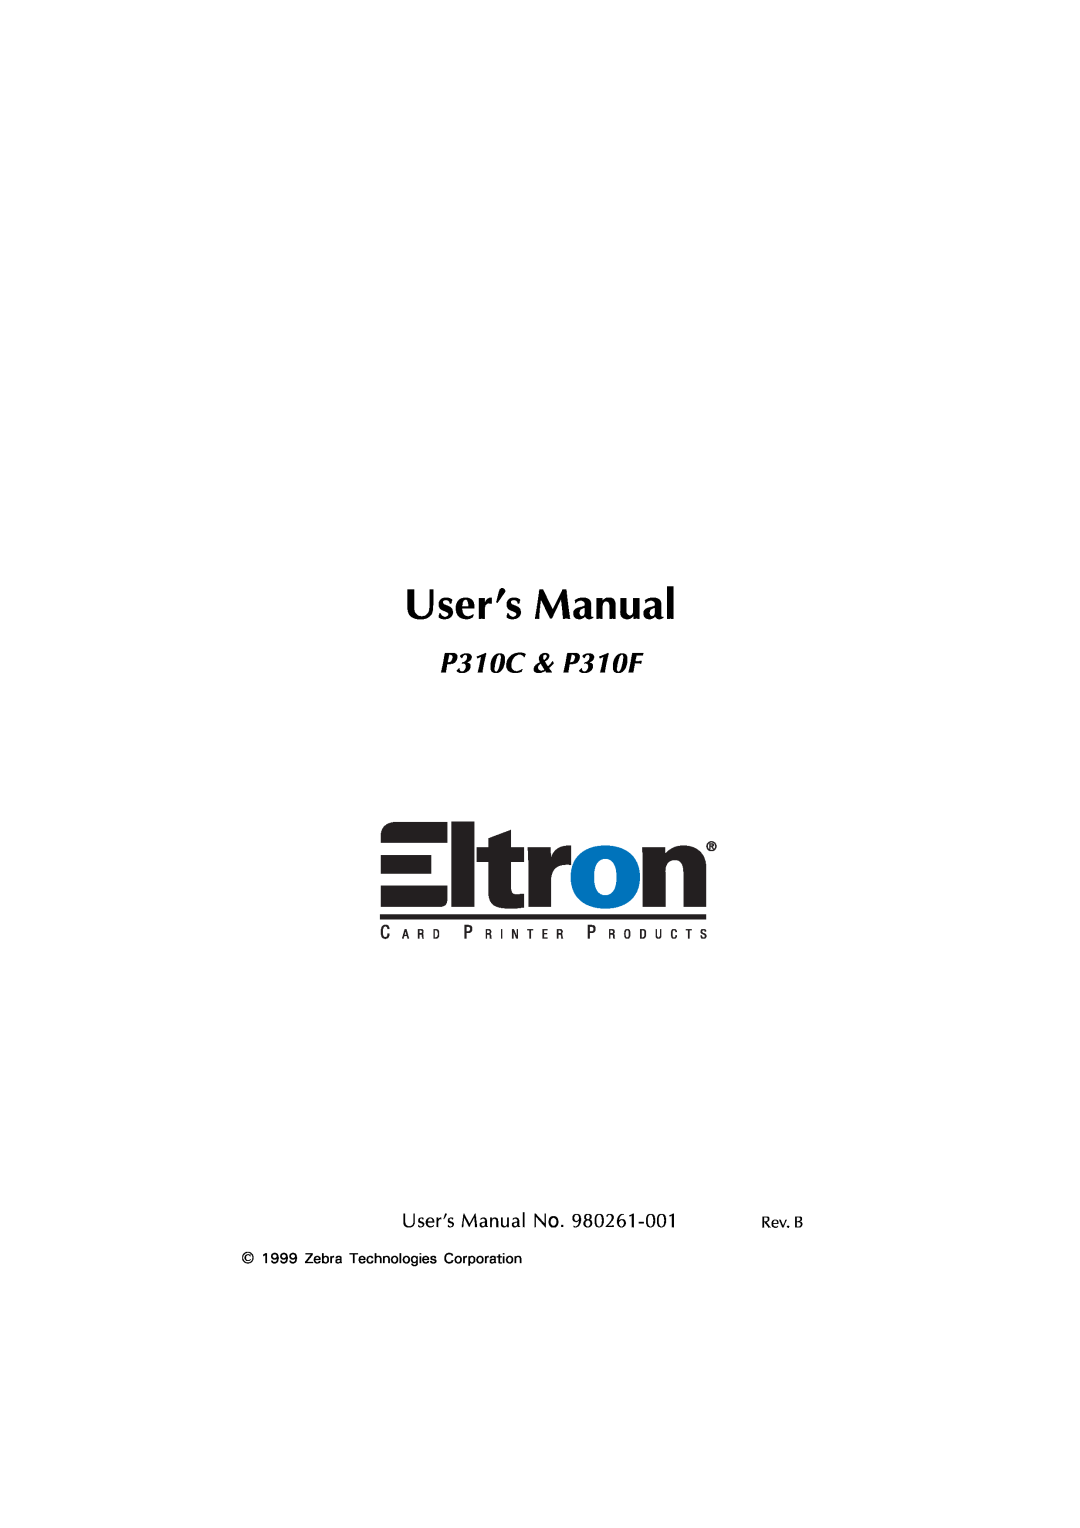 Zebra Technologies user manual P310C & P310F, Rev. B 